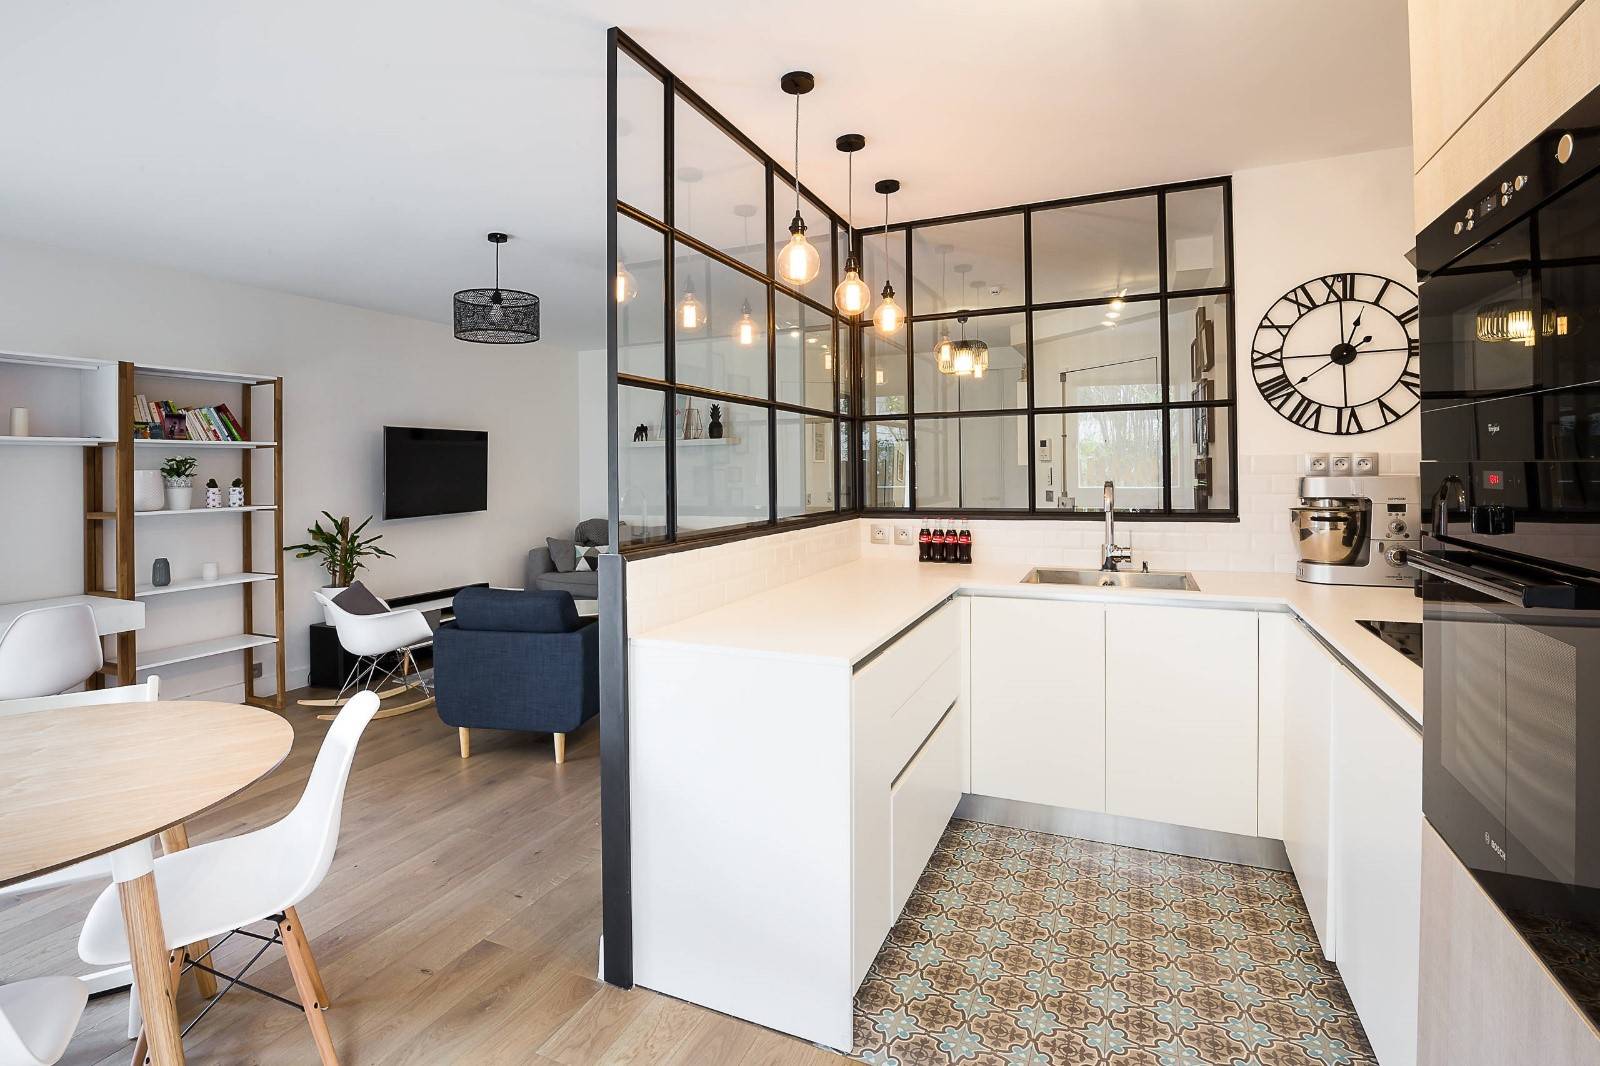 Дизайн кухни-гостинной в частном доме: как оформить интерьер столовой в коттедже, зонирование и совмещенная планировка, кухня и зал вместе